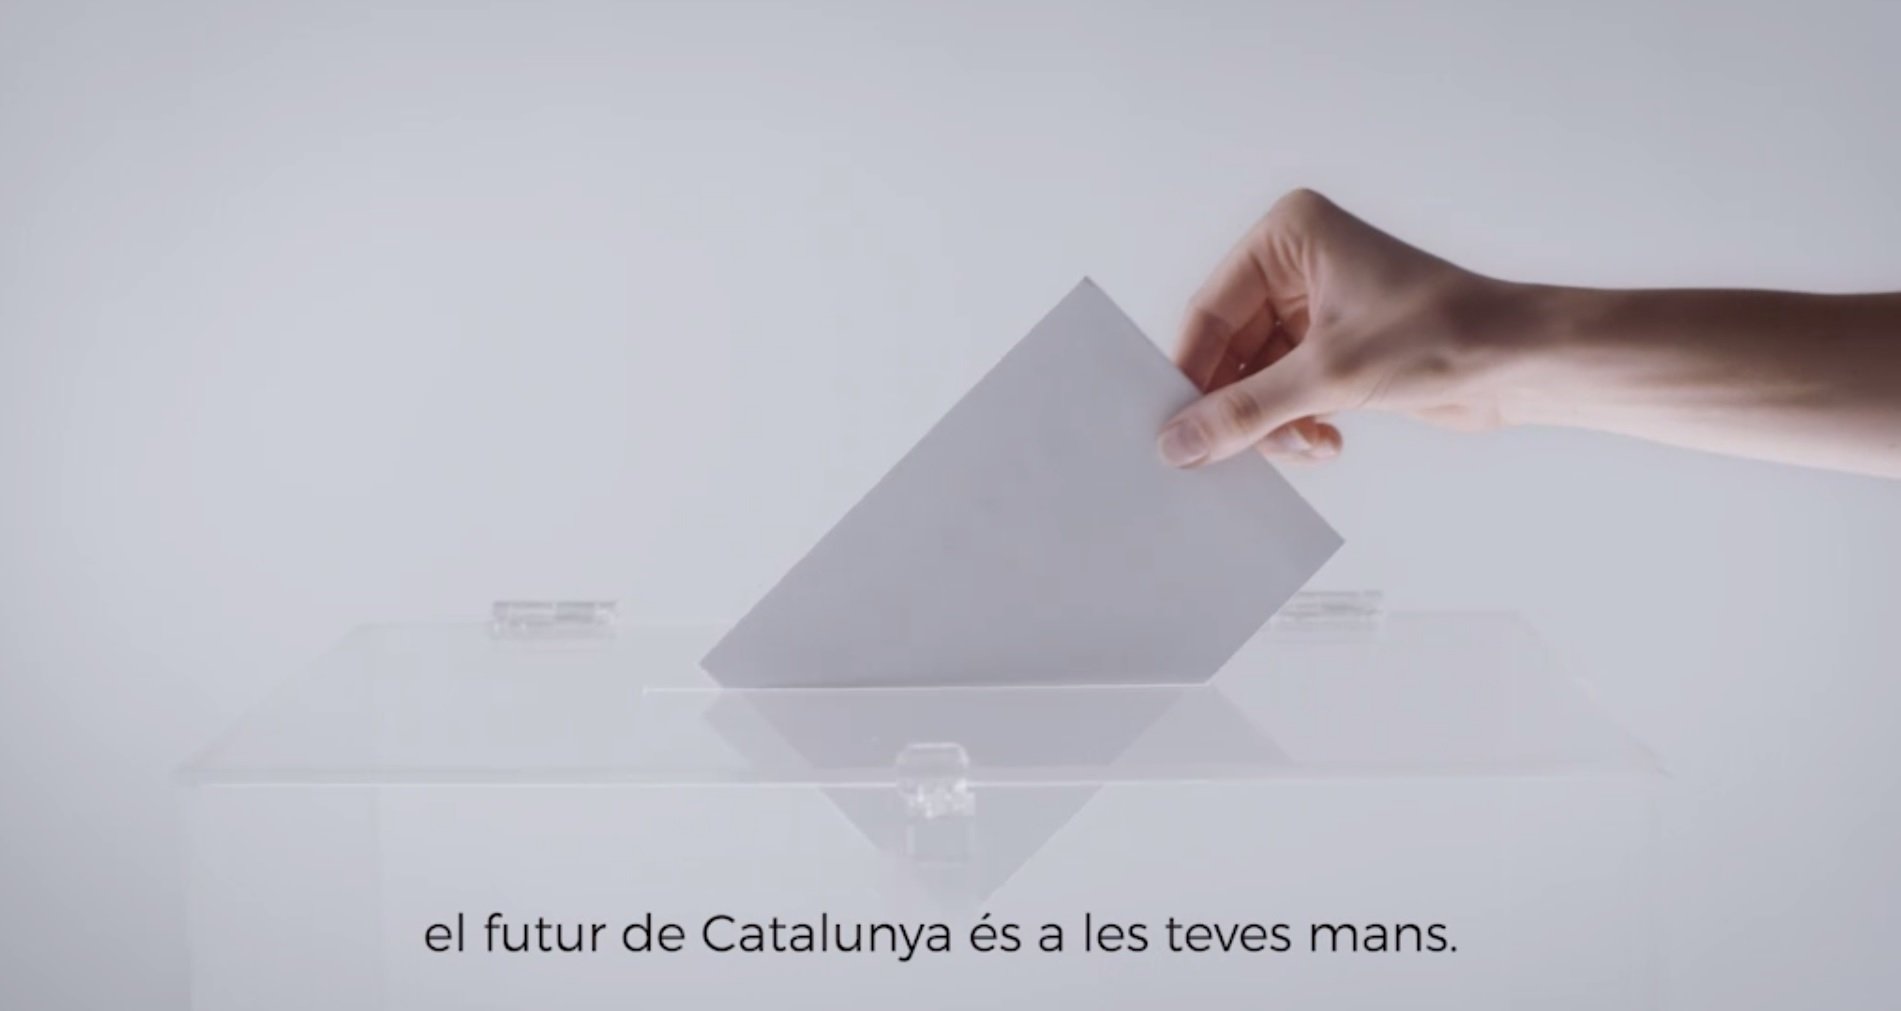 La Generalitat lanza a medianoche el spot llamando a la participación en el 1-O